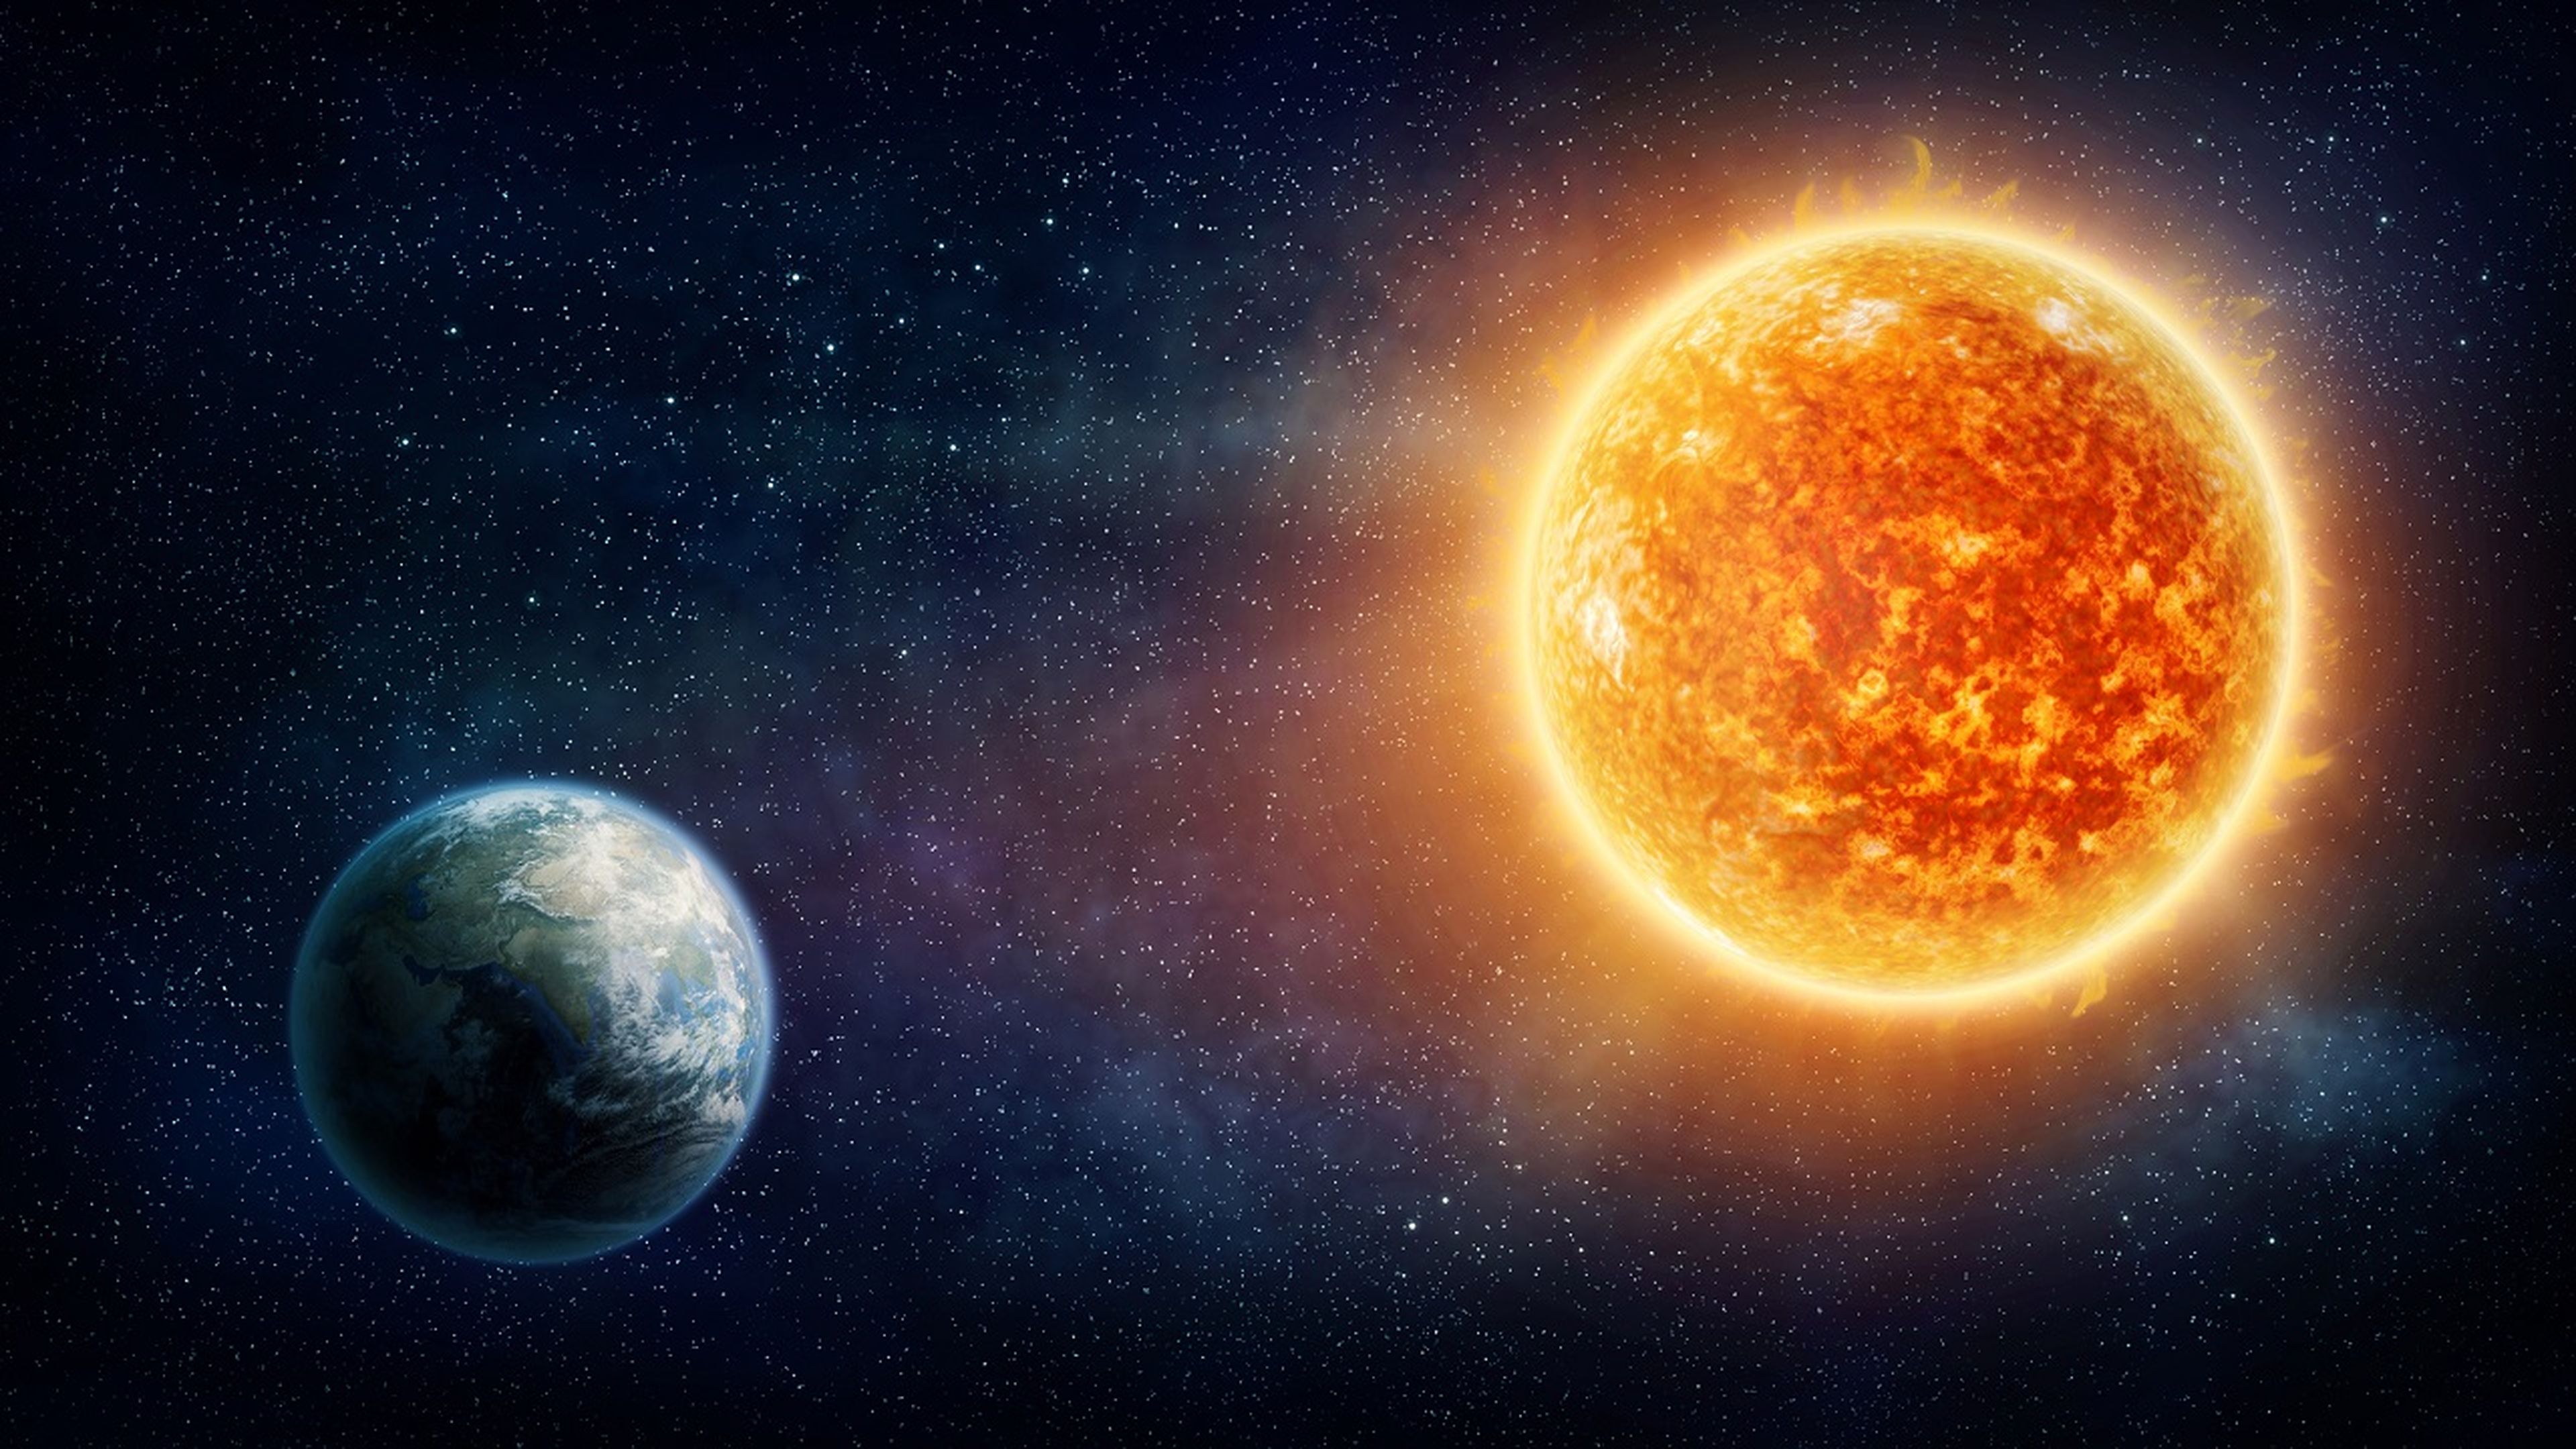 Así es el nuevo planeta descubierto “en nuestro patio trasero” y que orbita en torno a una estrella igual al Sol